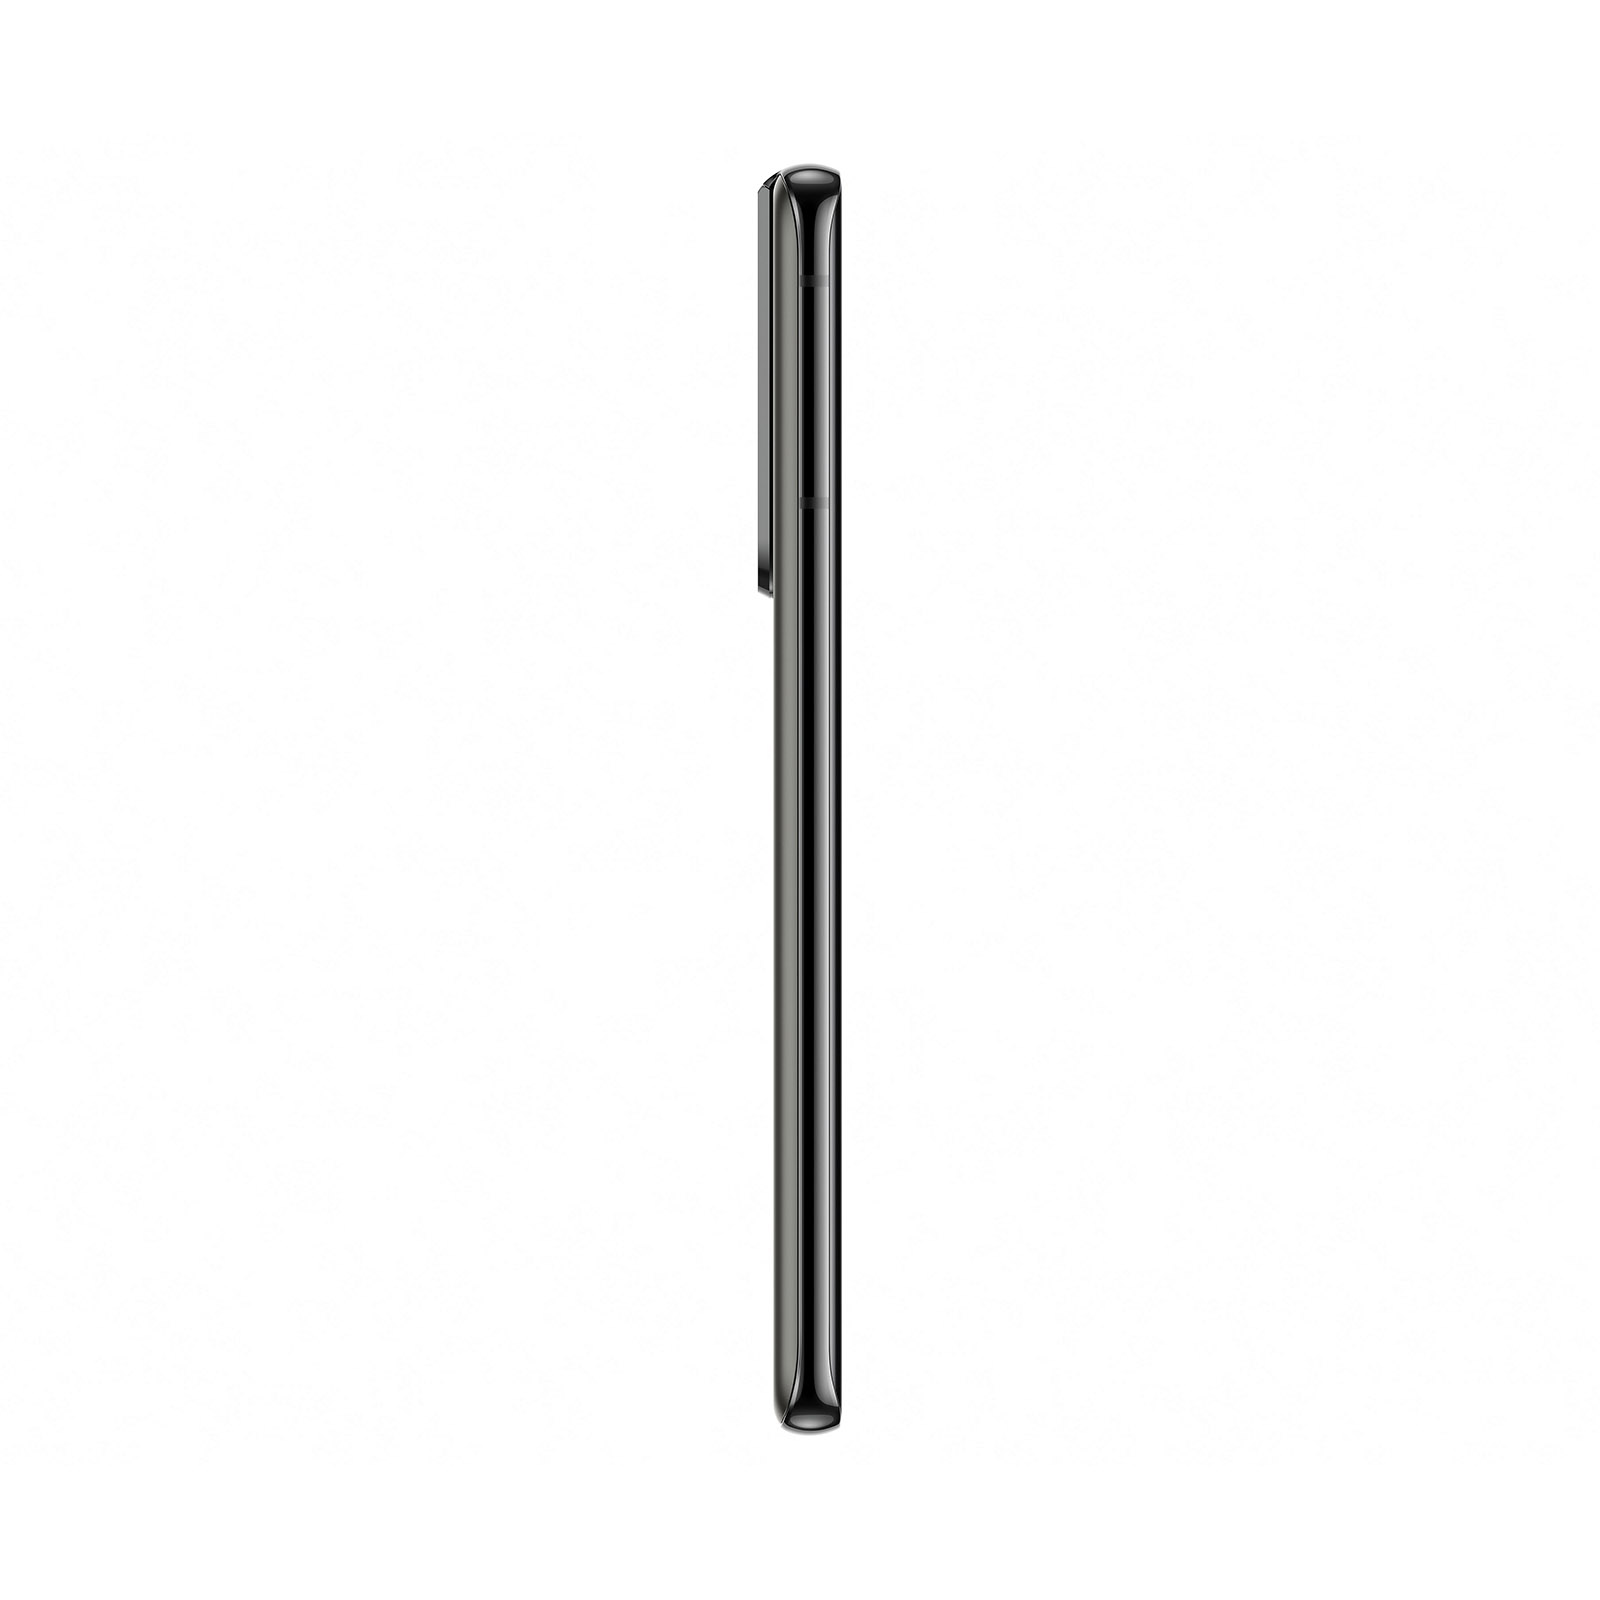 گوشی موبایل سامسونگ Galaxy S21 Ultra 5G ظرفیت 256 گیگابایت با گارانتی 18 ماه